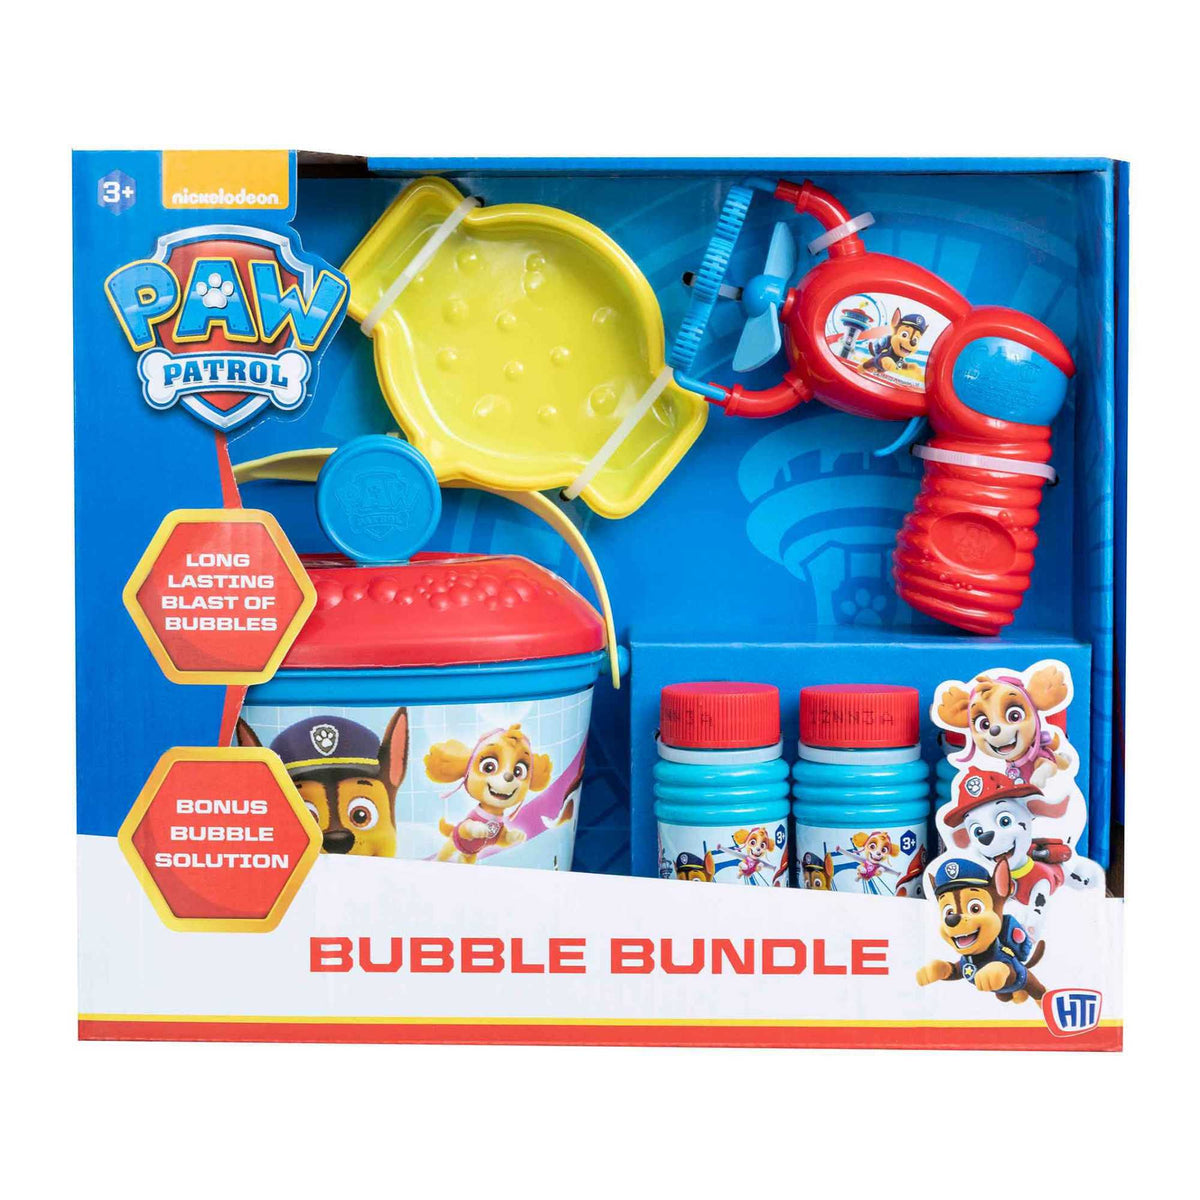 Paw Patrol Bubble Bundle Includes Bubble Gun, Bubble Wands &amp; Solution